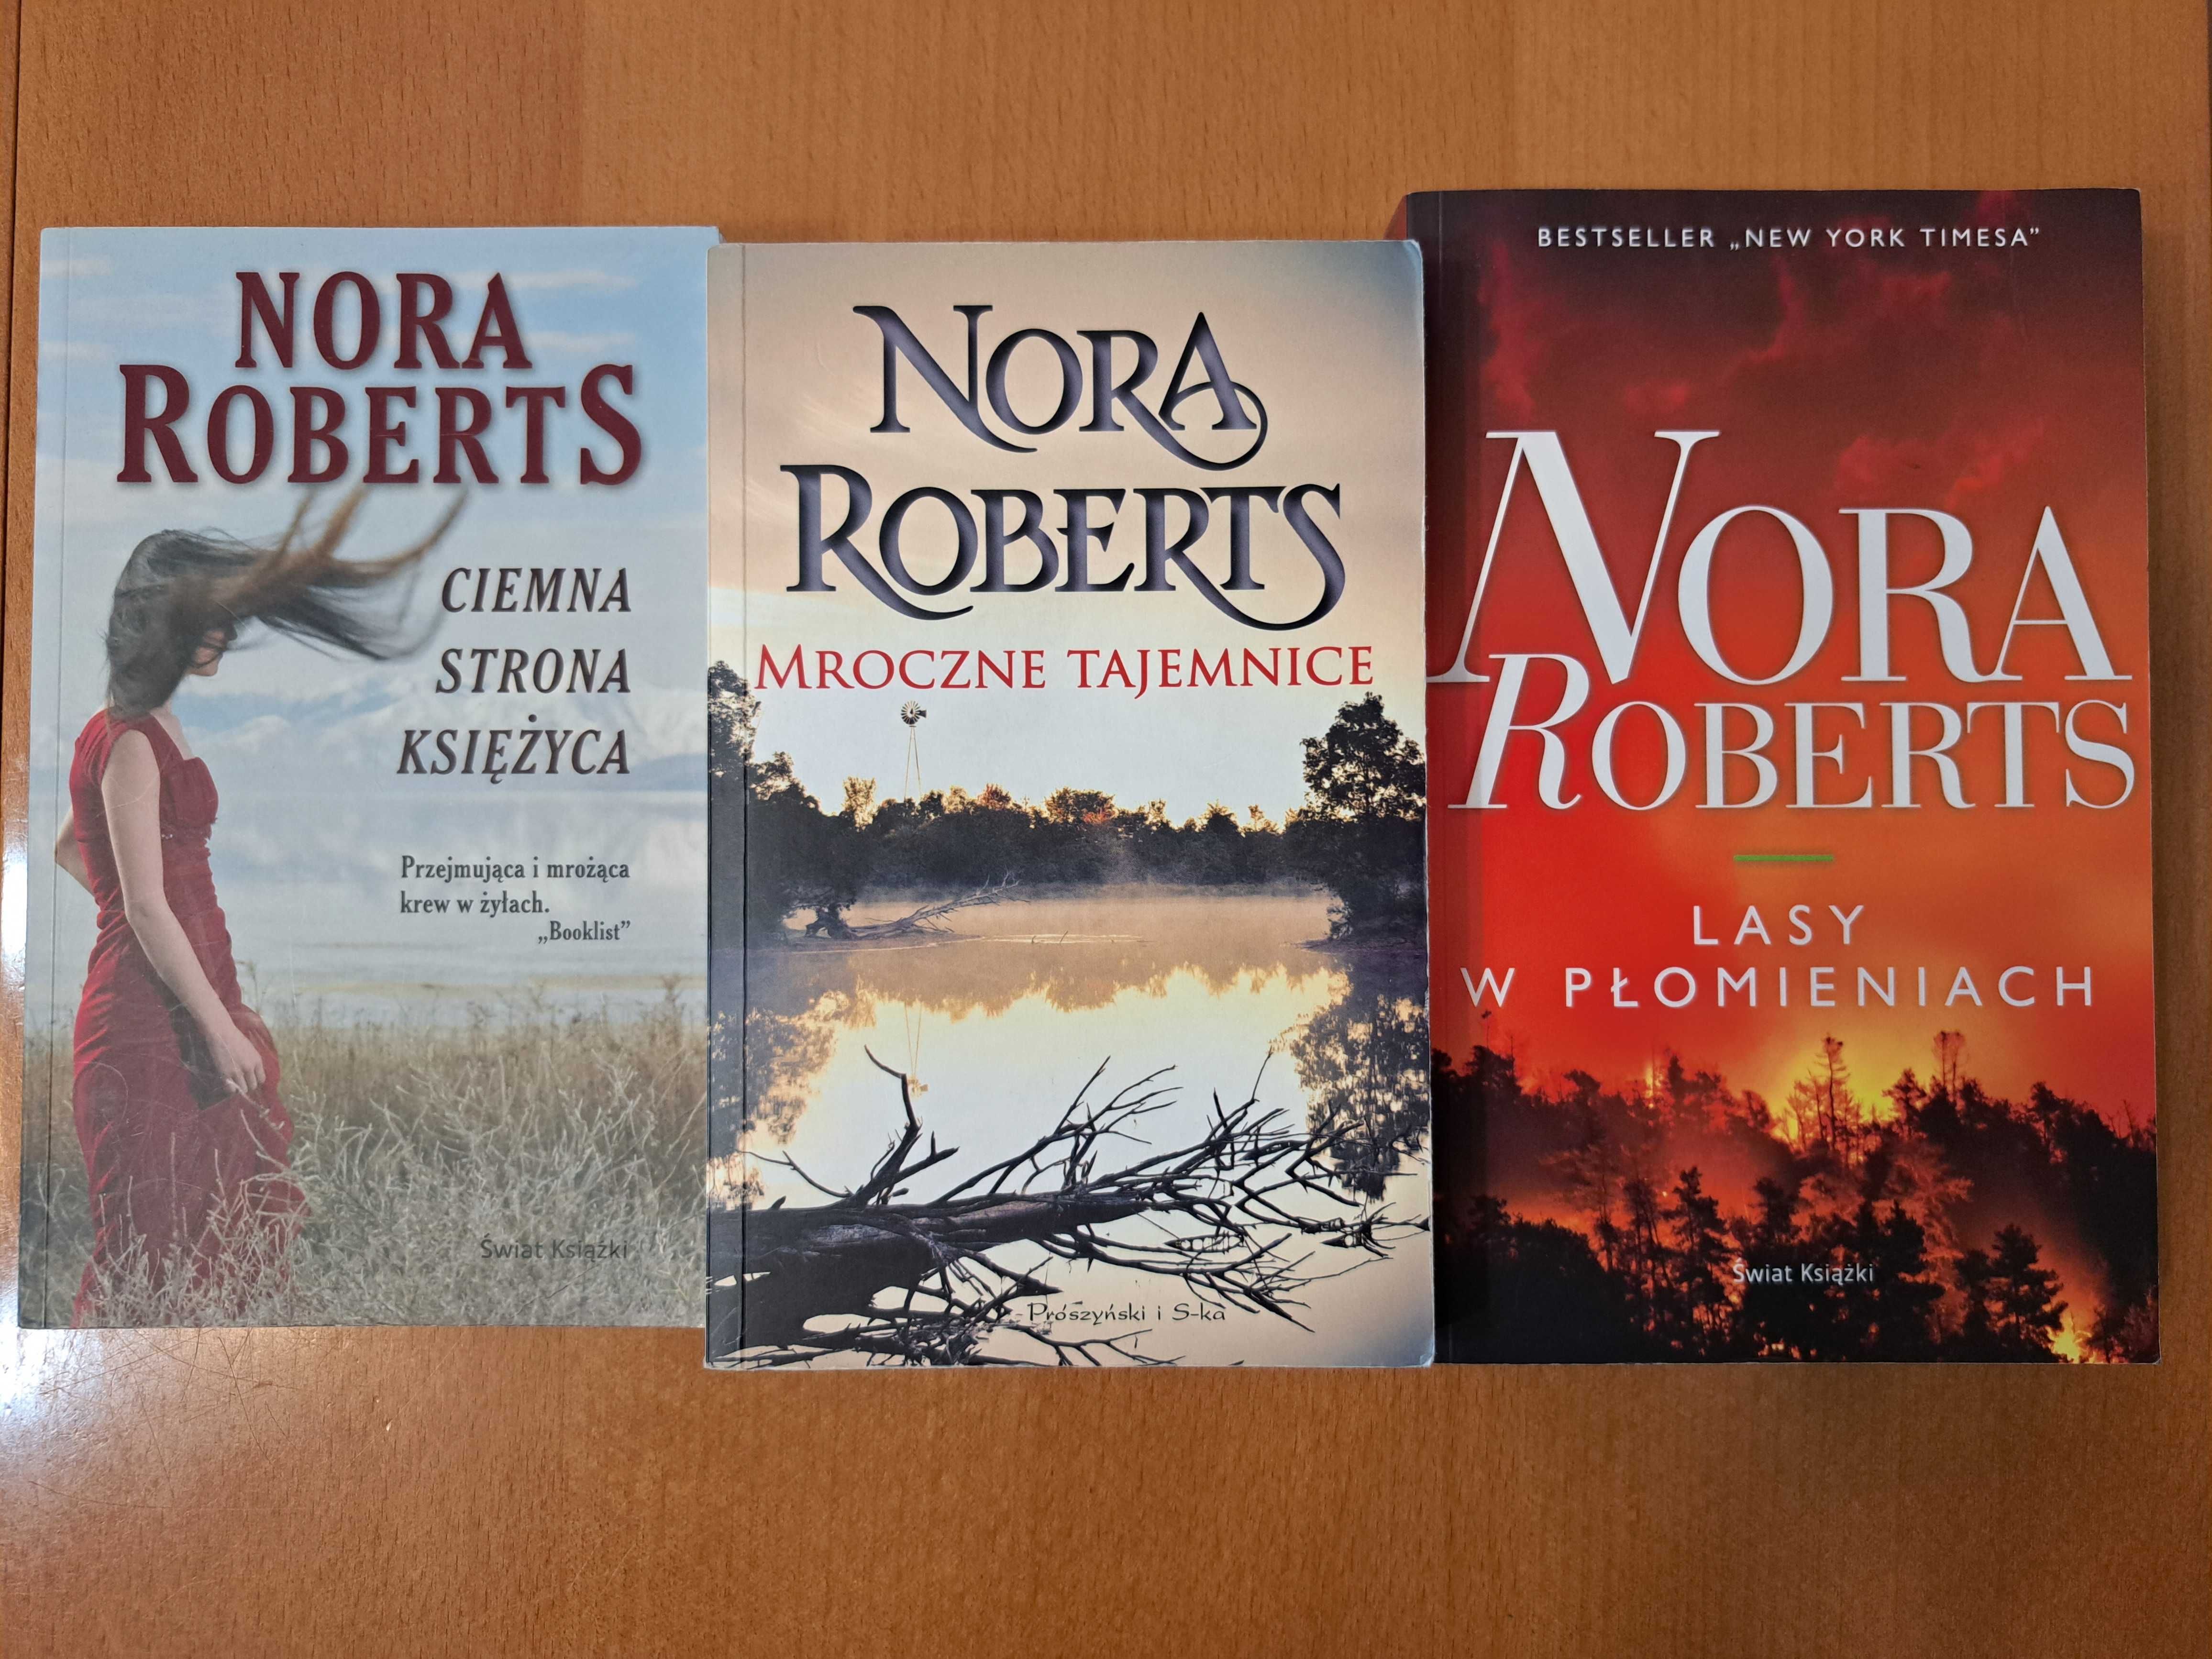 Nora Roberts Mrocz tajemnice, Ciem strona księżyca